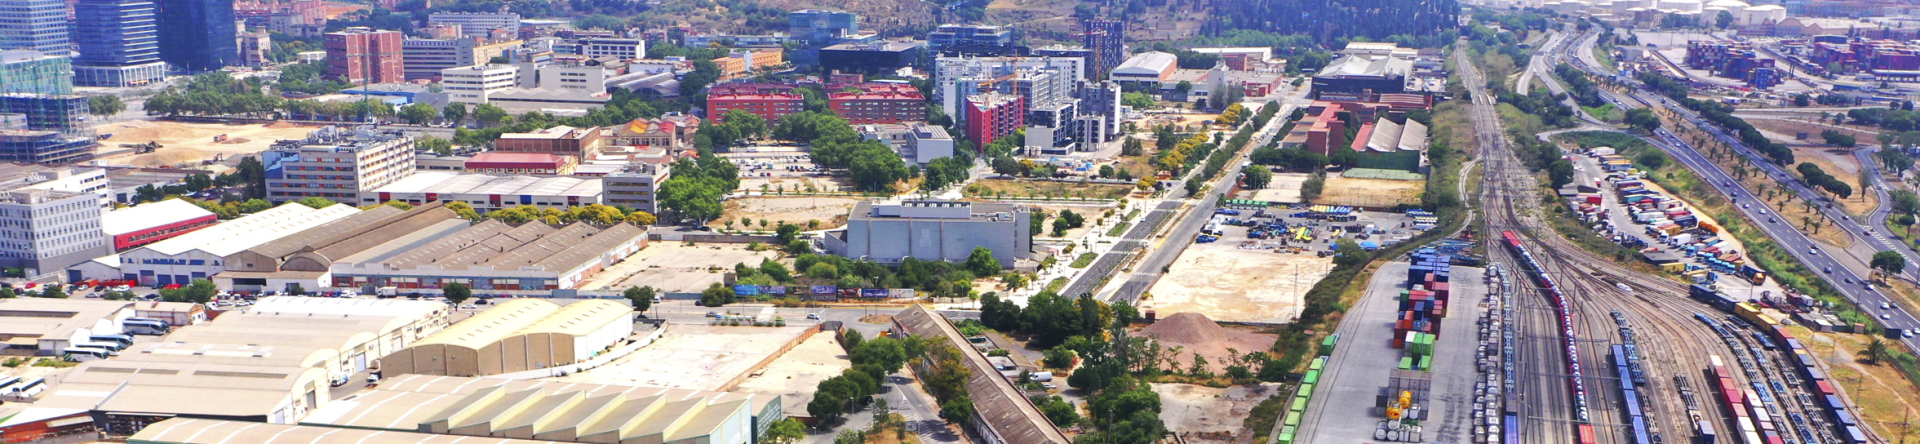 L’Institut Municipal d’Urbanisme impulsa el desenvolupament urbanístic i l’execució del nou Pla Especial d'Infraestructures.